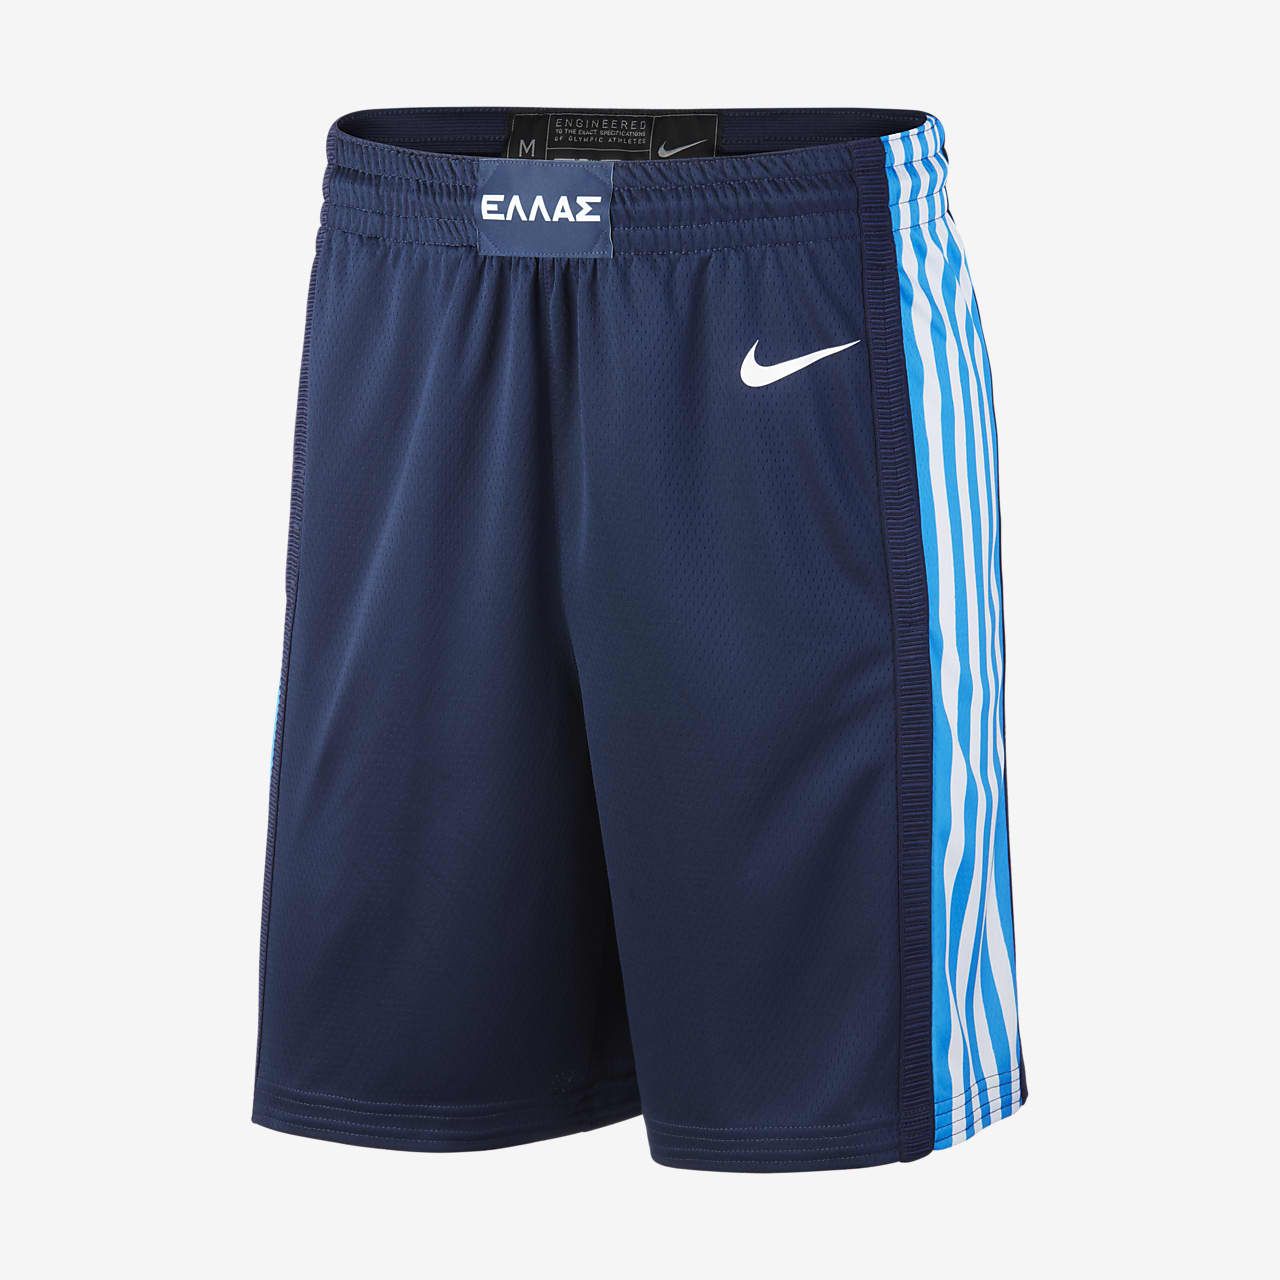 Segunda equipación Grecia Nike Limited Pantalón corto de baloncesto - Hombre